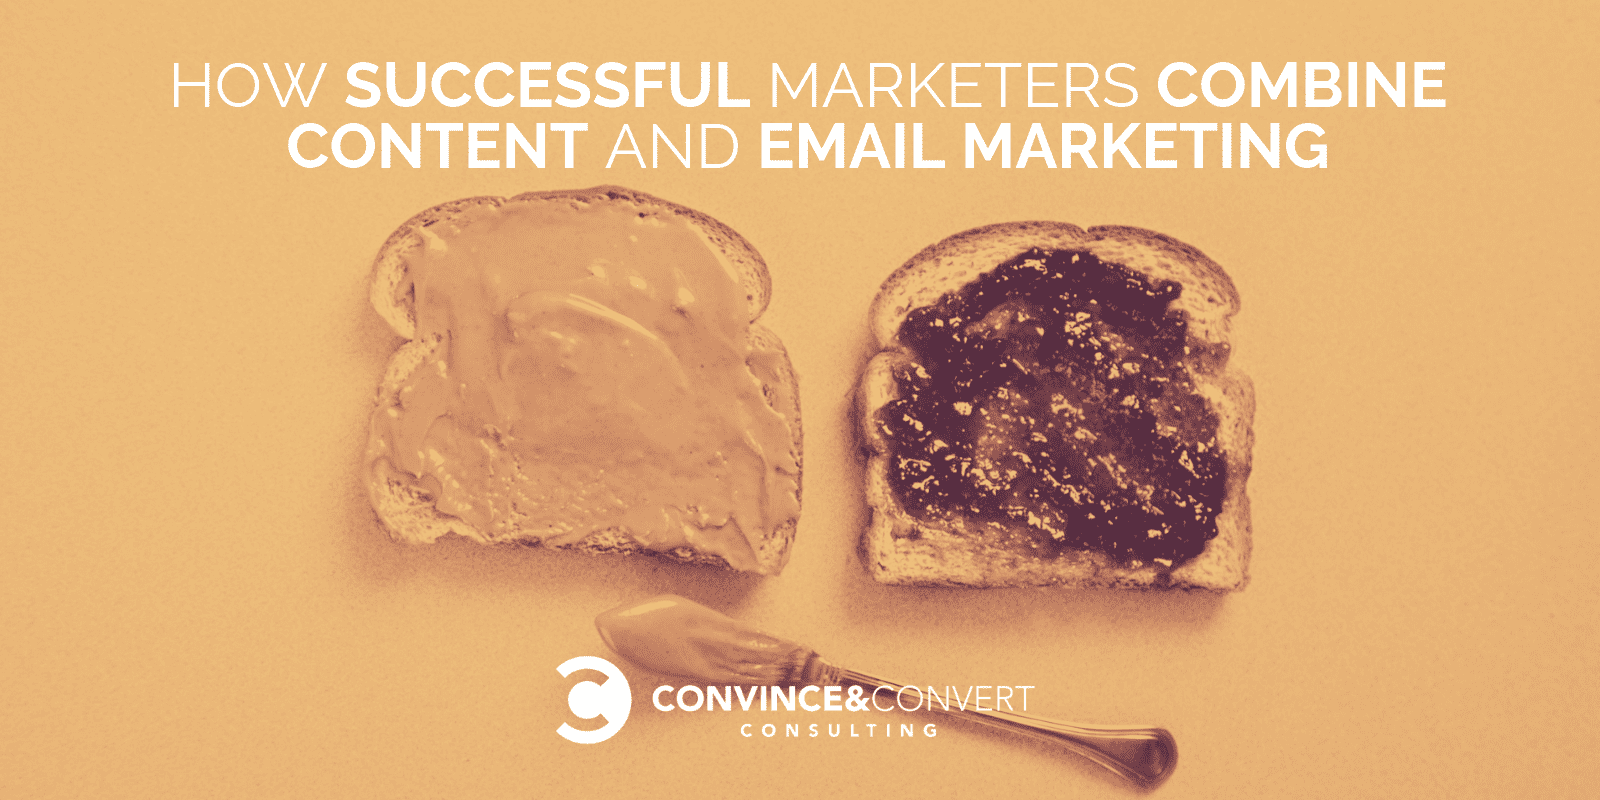 Cómo los marketers exitosos combinan contenido y email marketing